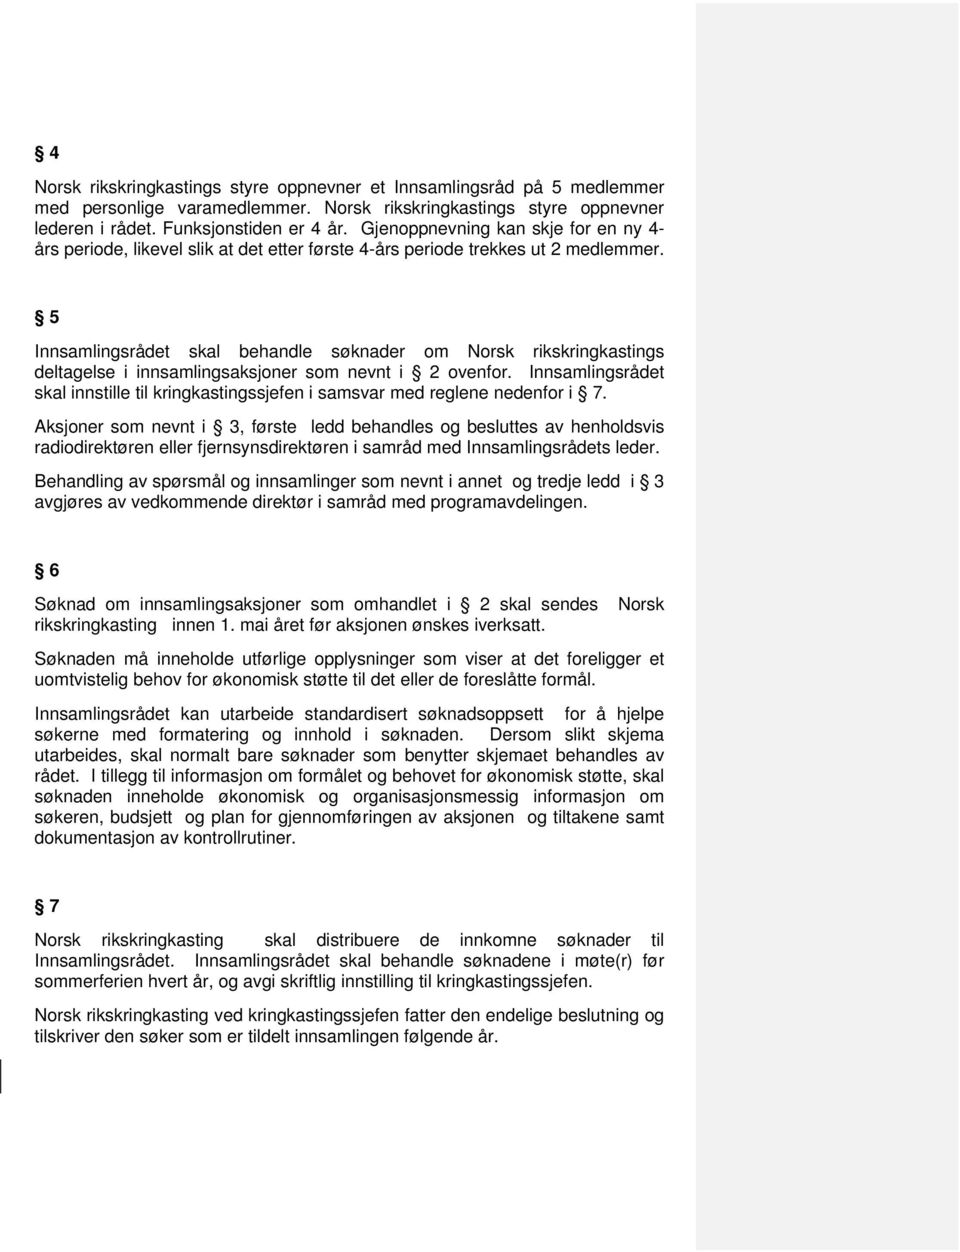 5 Innsamlingsrådet skal behandle søknader om Norsk rikskringkastings deltagelse i innsamlingsaksjoner som nevnt i 2 ovenfor.